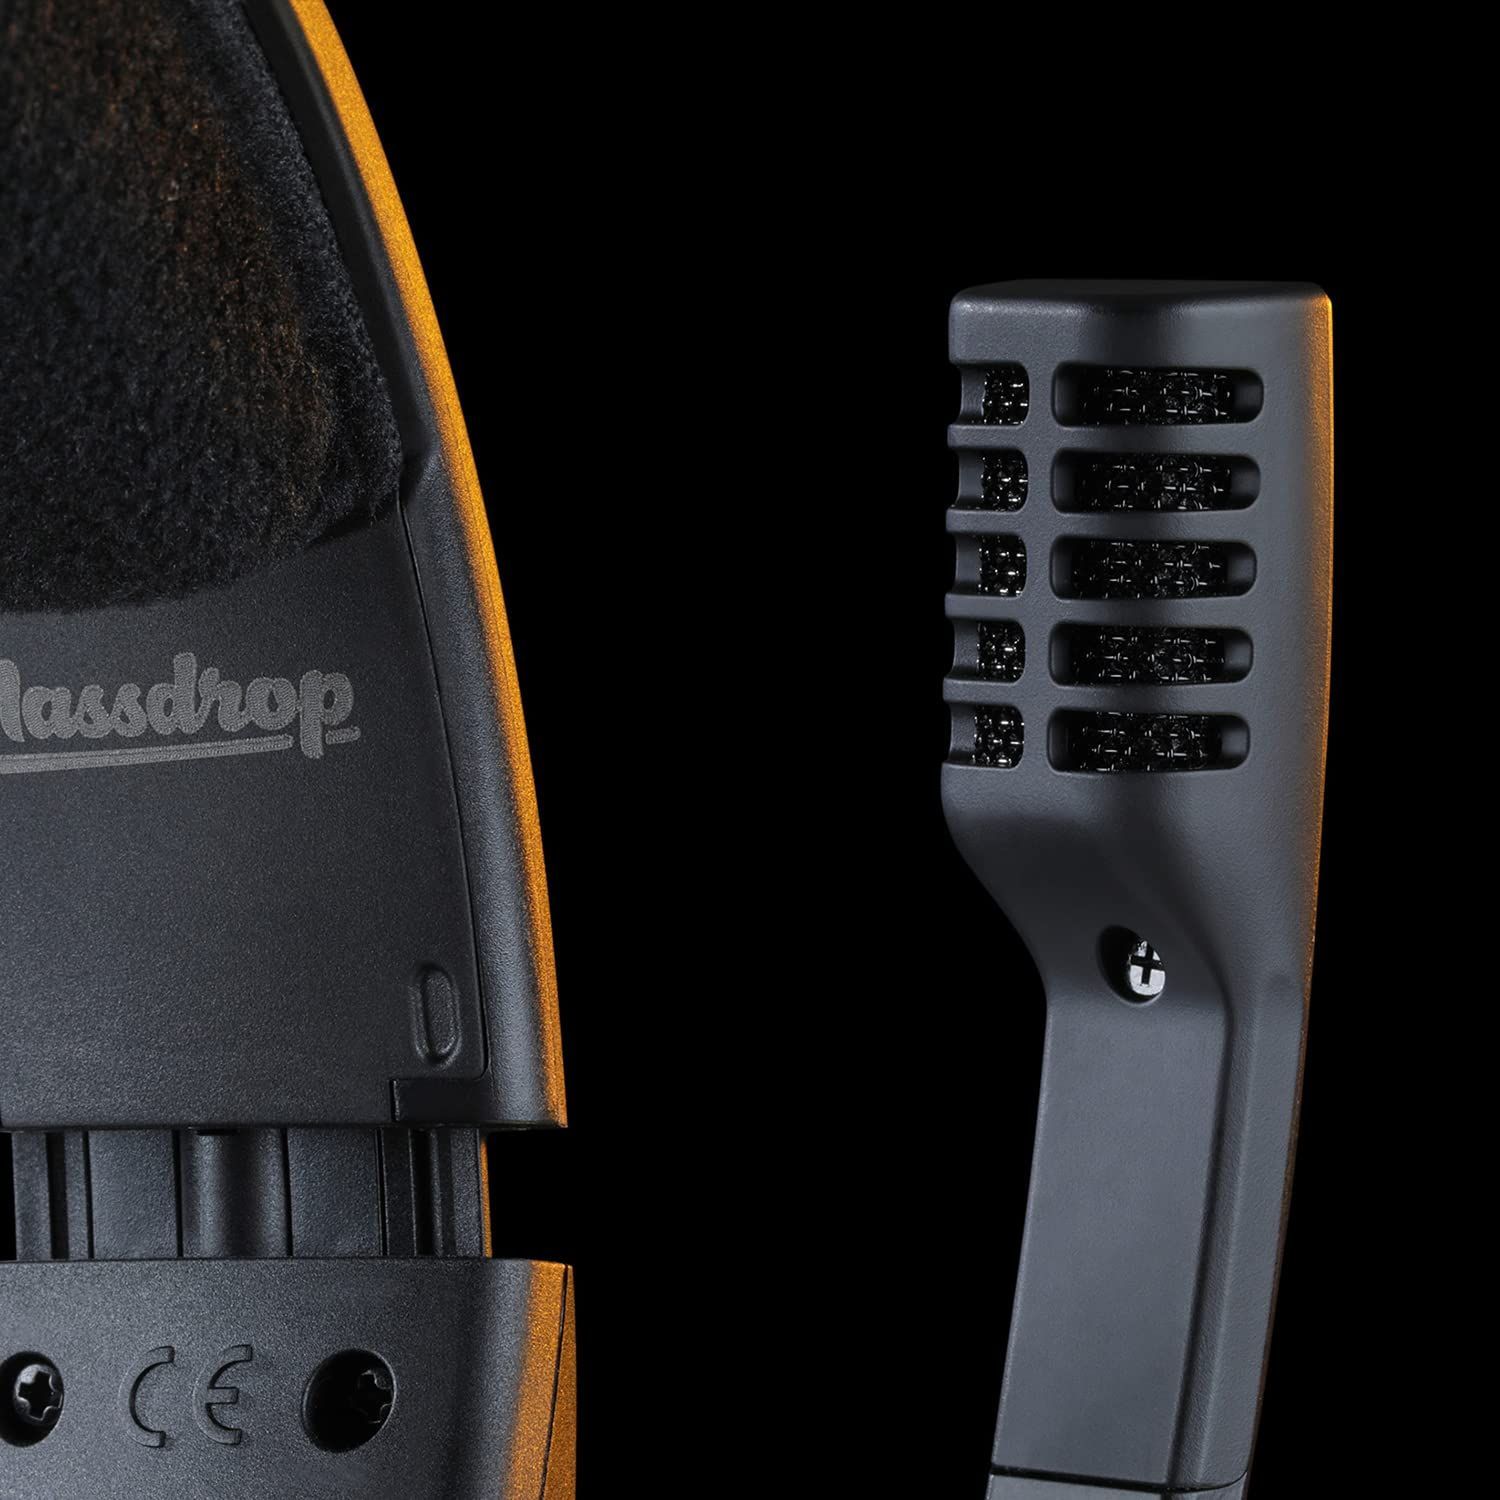 【新着商品】Massdrop x Sennheiser PC37X ゲーム用ヘッドセット - ノイズキャンセリングマイク  オーバーイヤーオープンバックデザイン 10フィート 取り外し可能なケーブル ベロアイヤーパッド ブラック